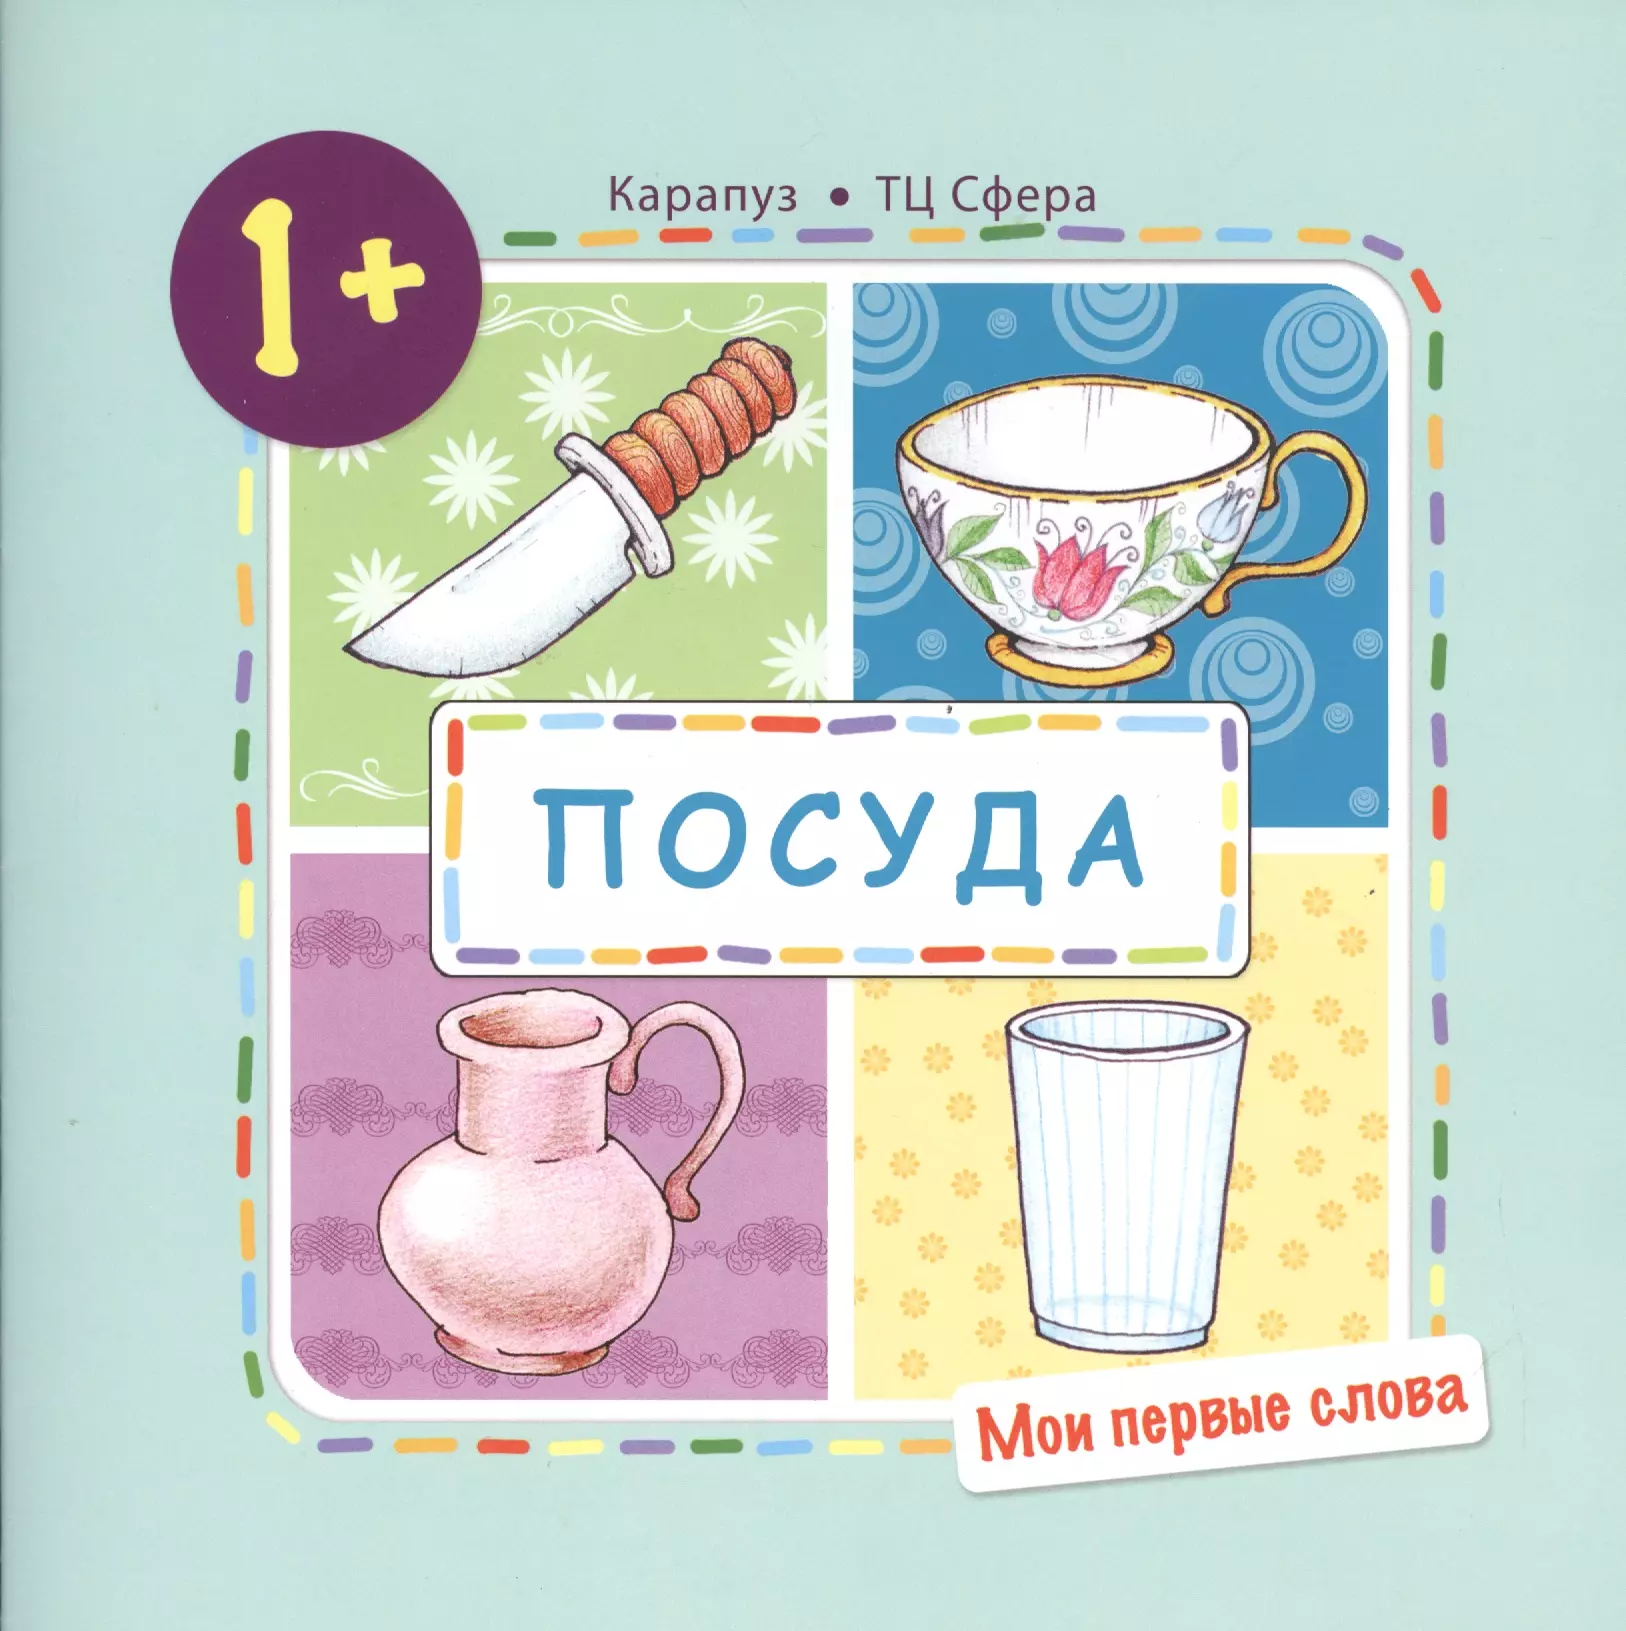 Громова Ольга Евгеньевна - Посуда (для детей 1-3 года)